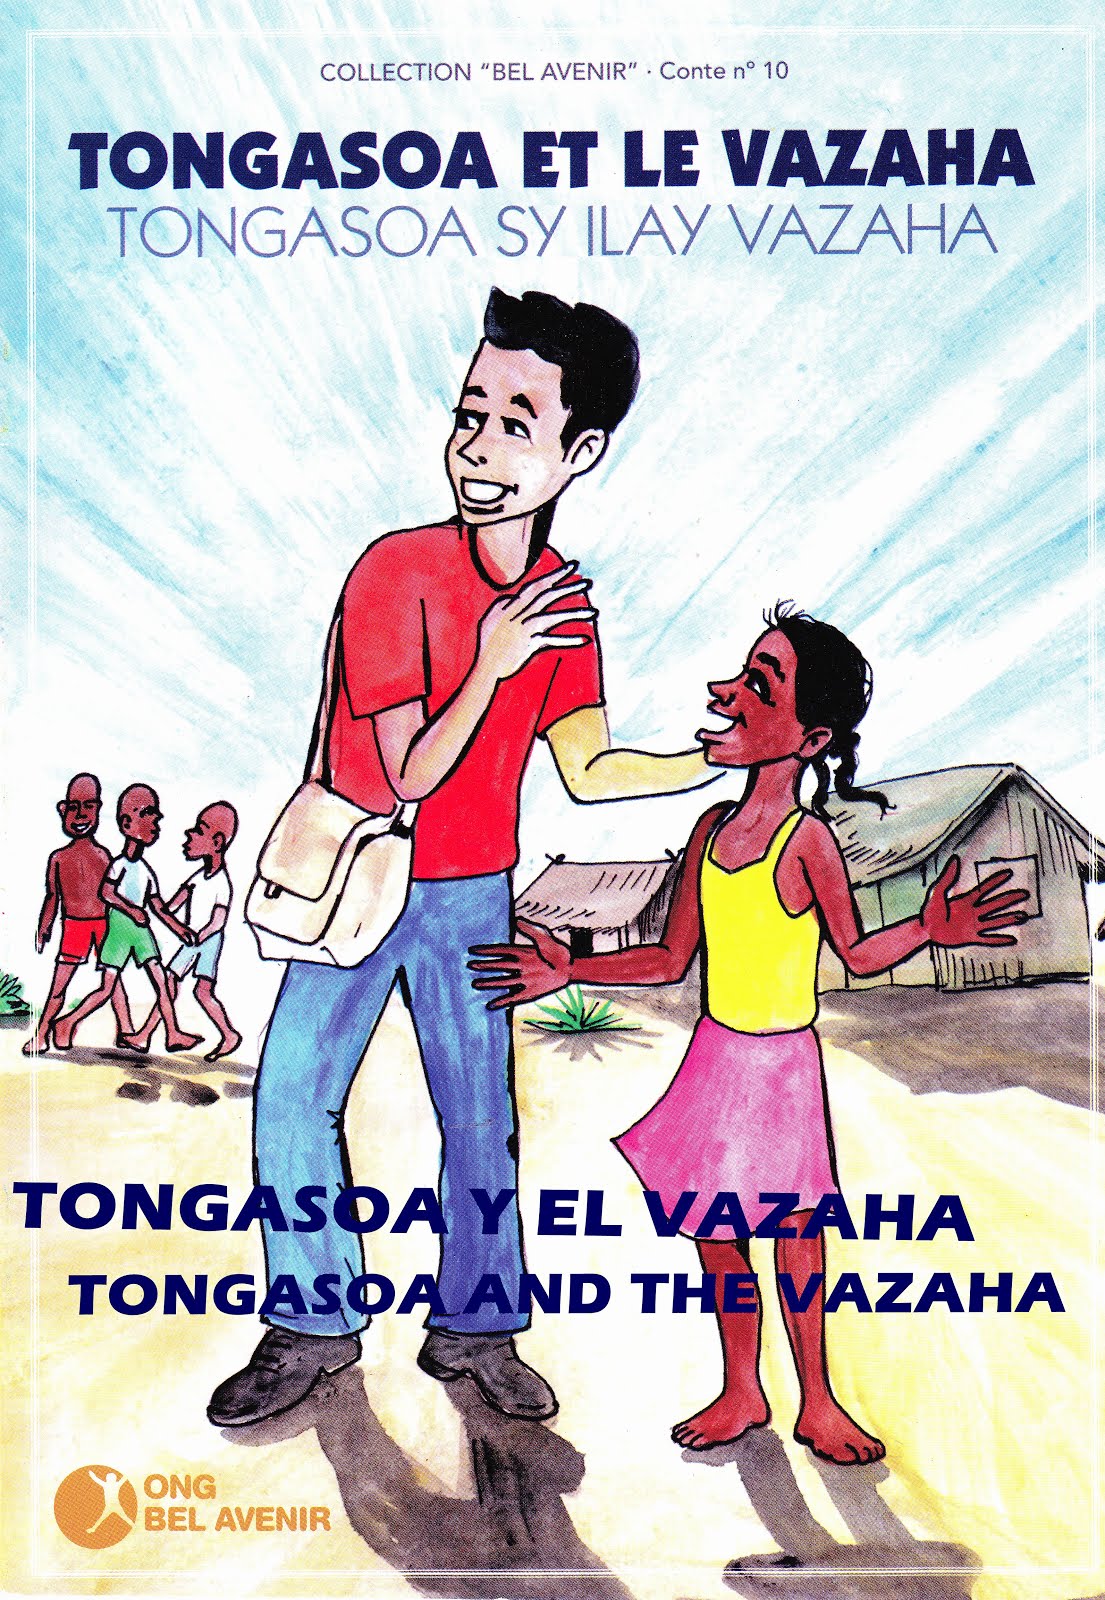 Tongasoa y el vazaha